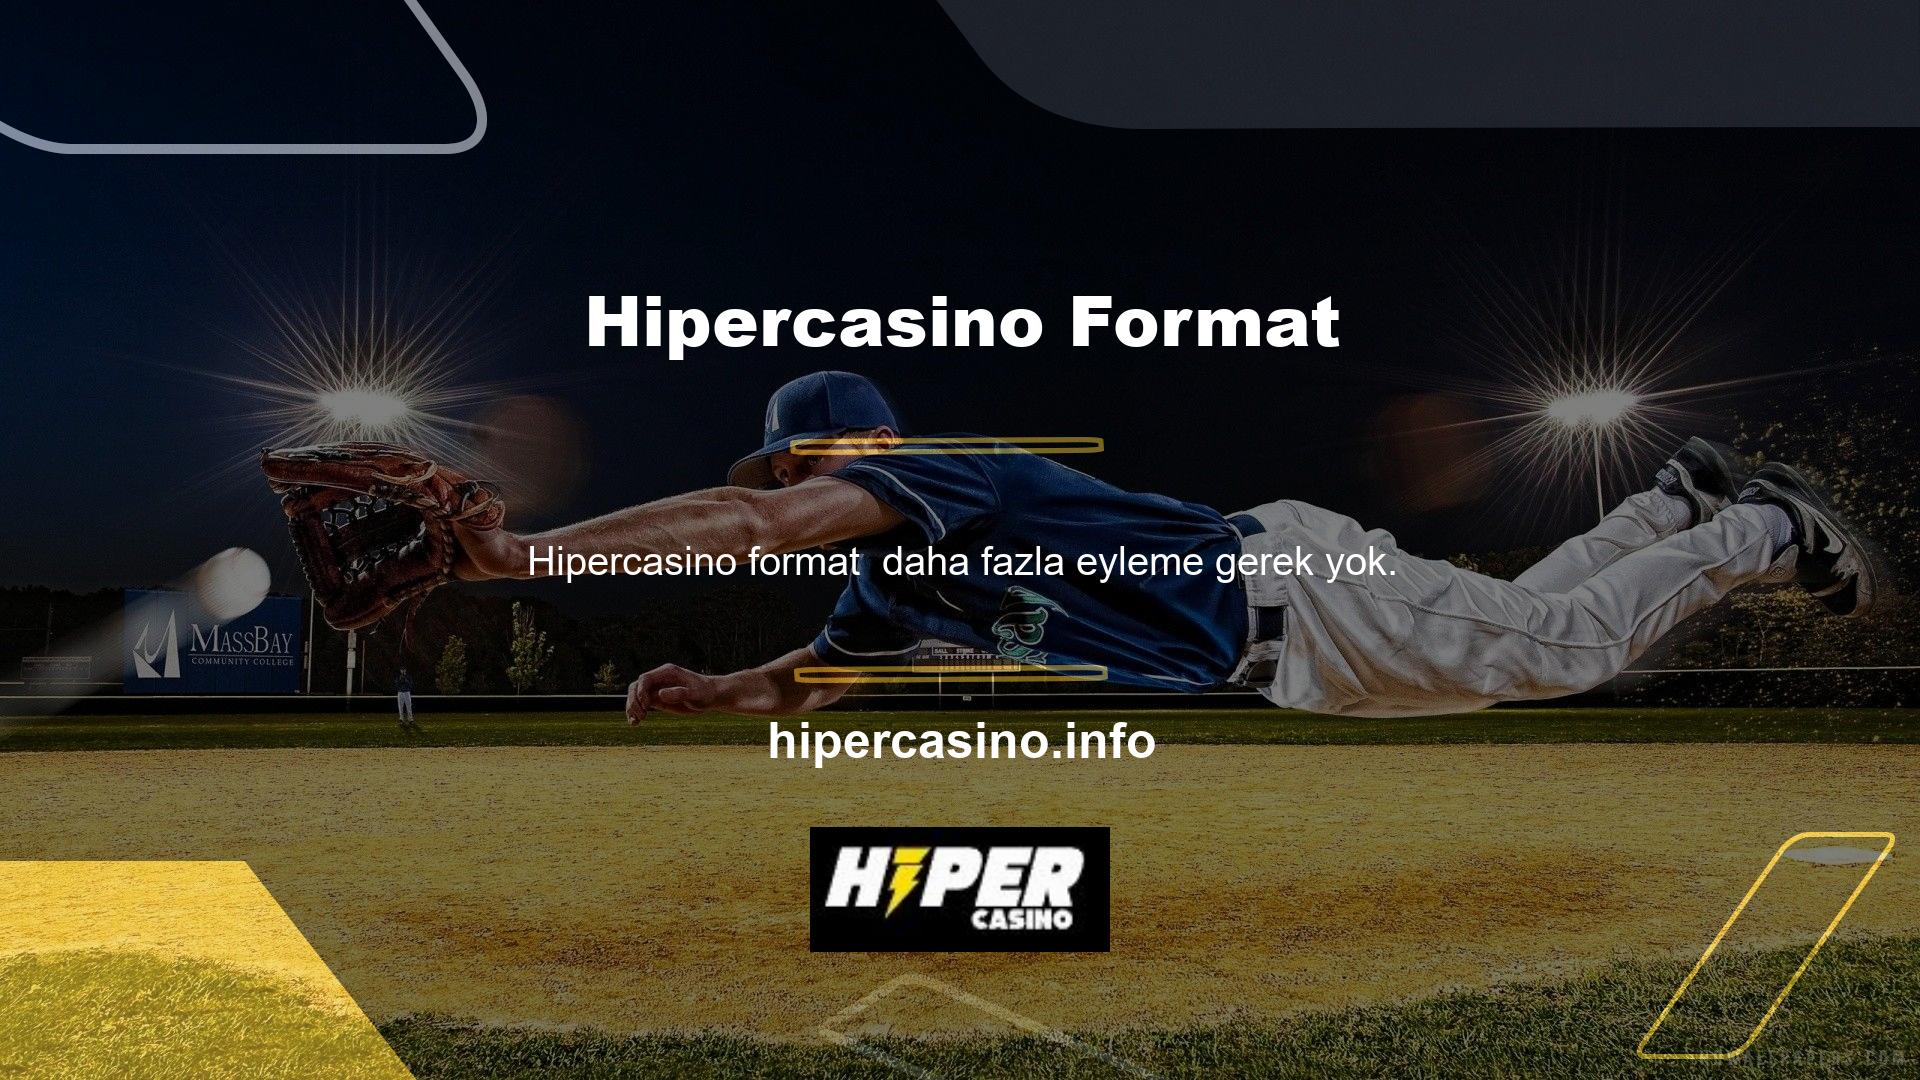 Hipercasino web sitesindeki çevrimiçi tekliflere göz atarsanız, size para kazanma şansı verecek casino oyun türleri vardır